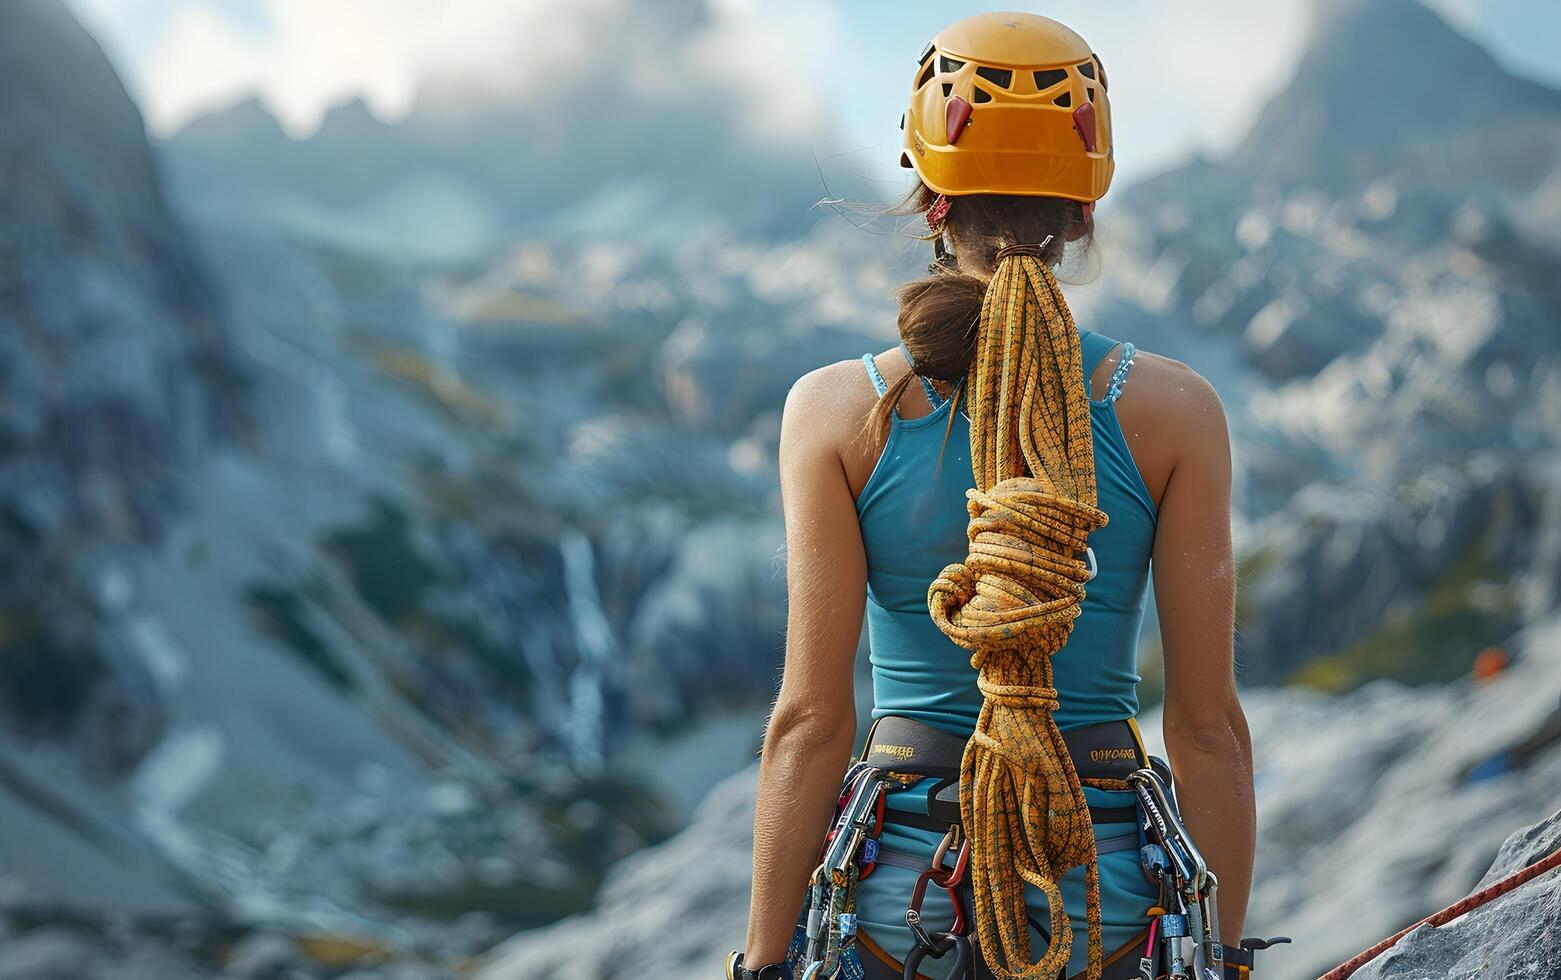 proche en haut de une sportif svelte jolie femme avec escalade harnais, corde et mousqueton pour sécurité, escalade sur une Roche dans le montagnes photo